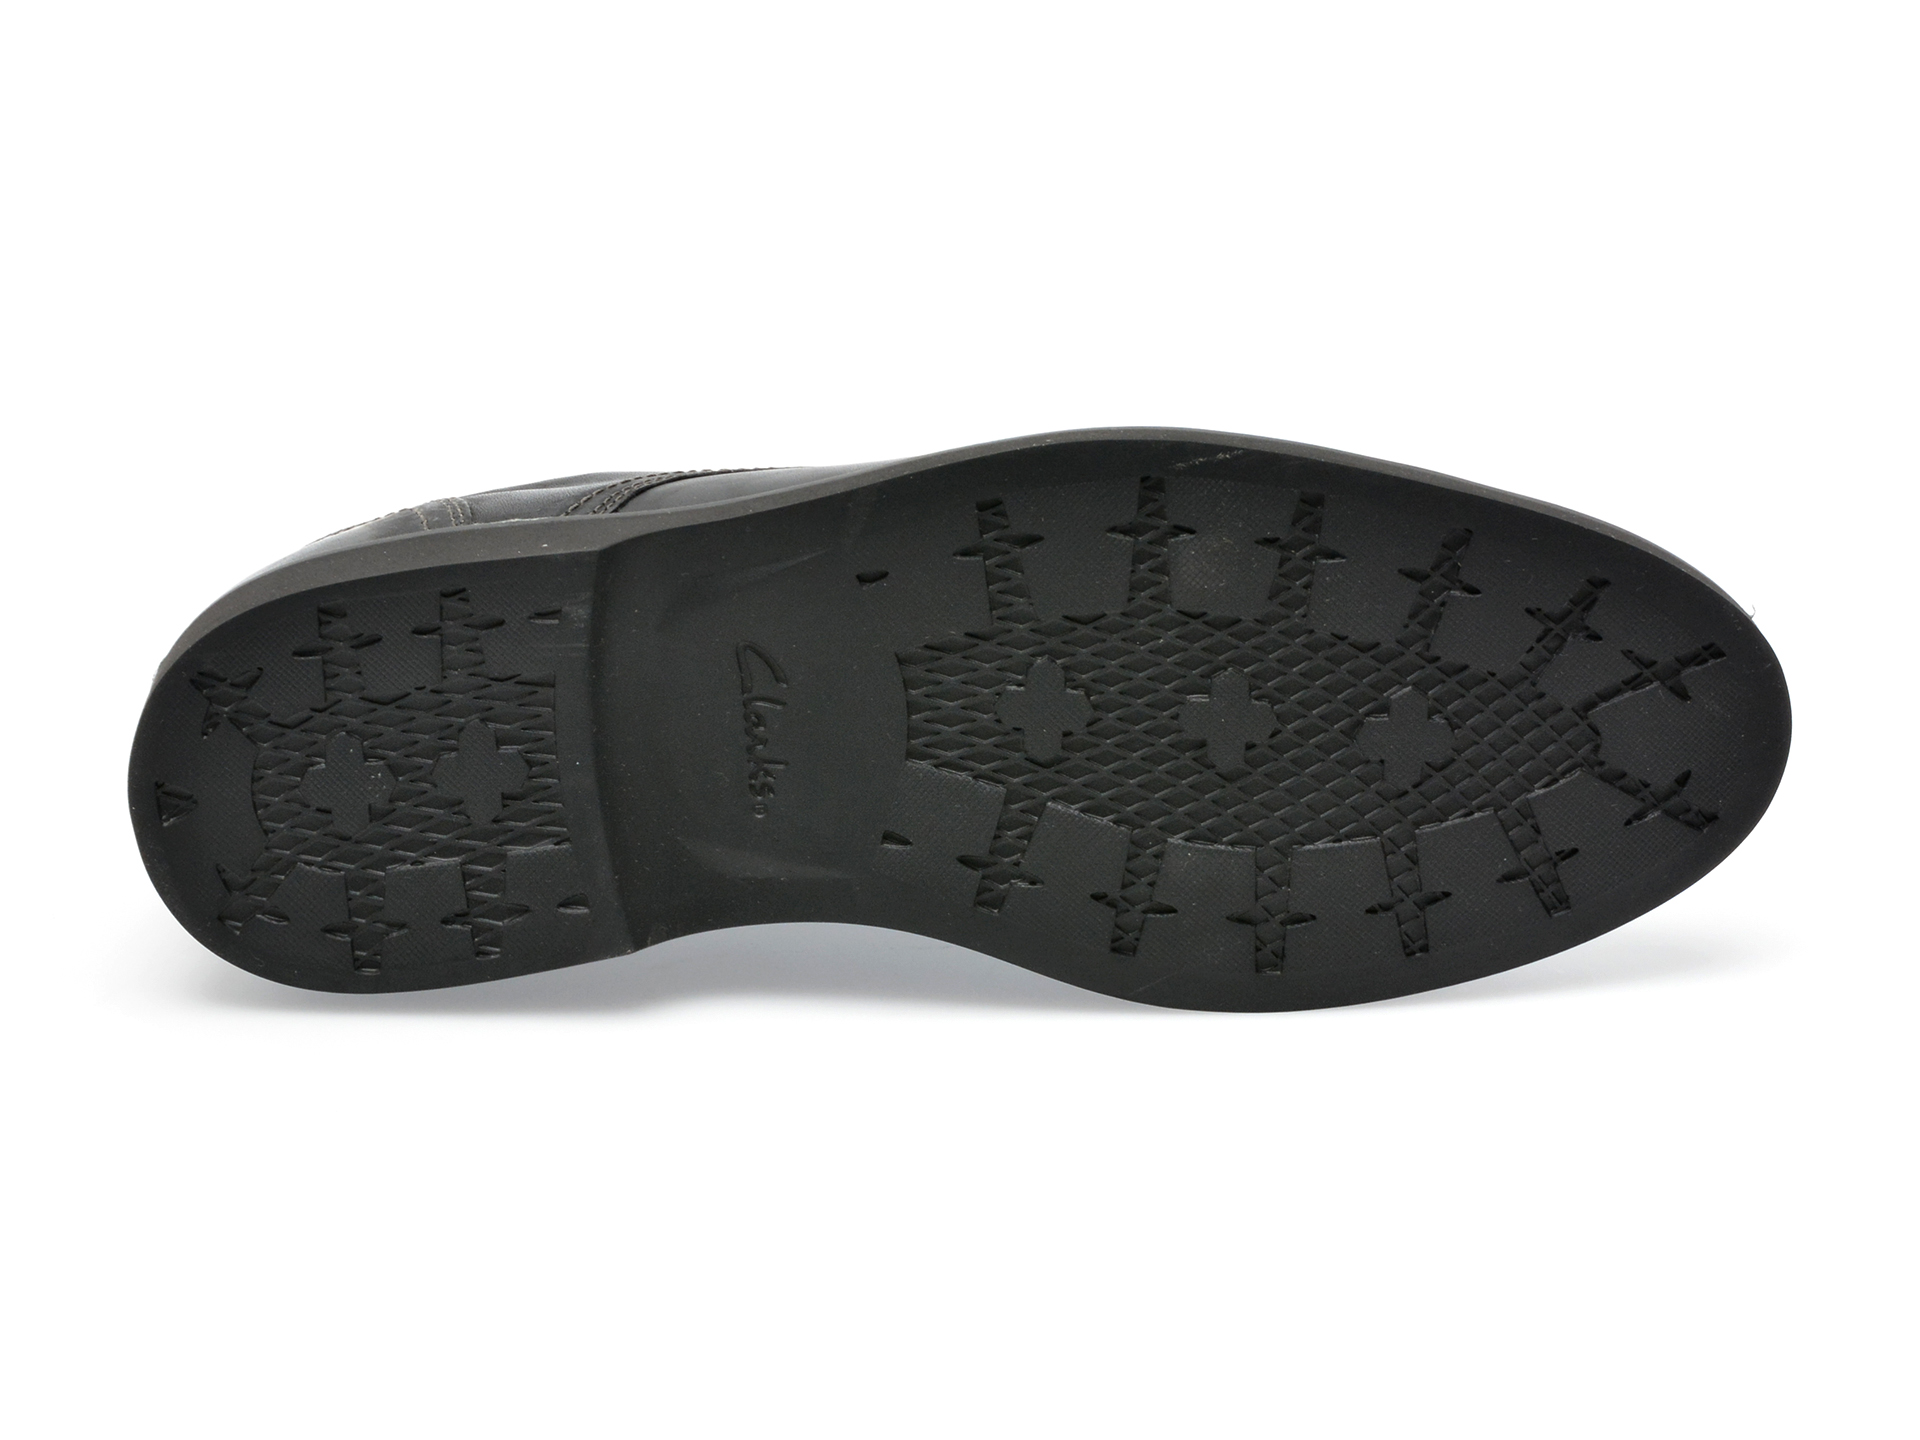 Poze Pantofi CLARKS negri, MALWLAC, din piele naturala Tezyo